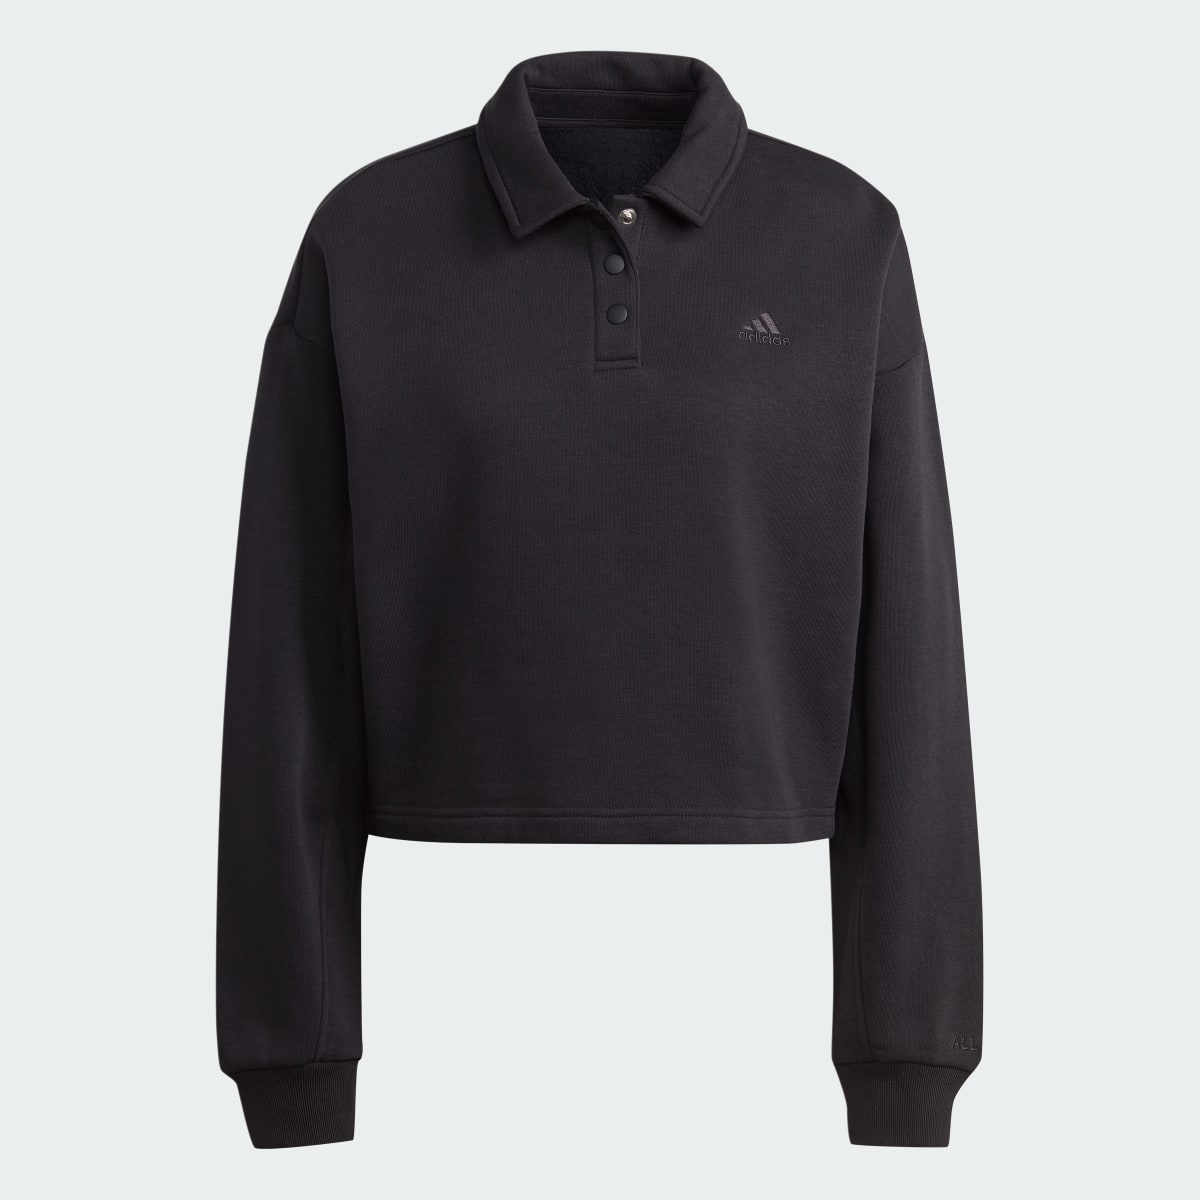 Adidas All SZN Fleece Graphic Polo Sweatshirt. 5